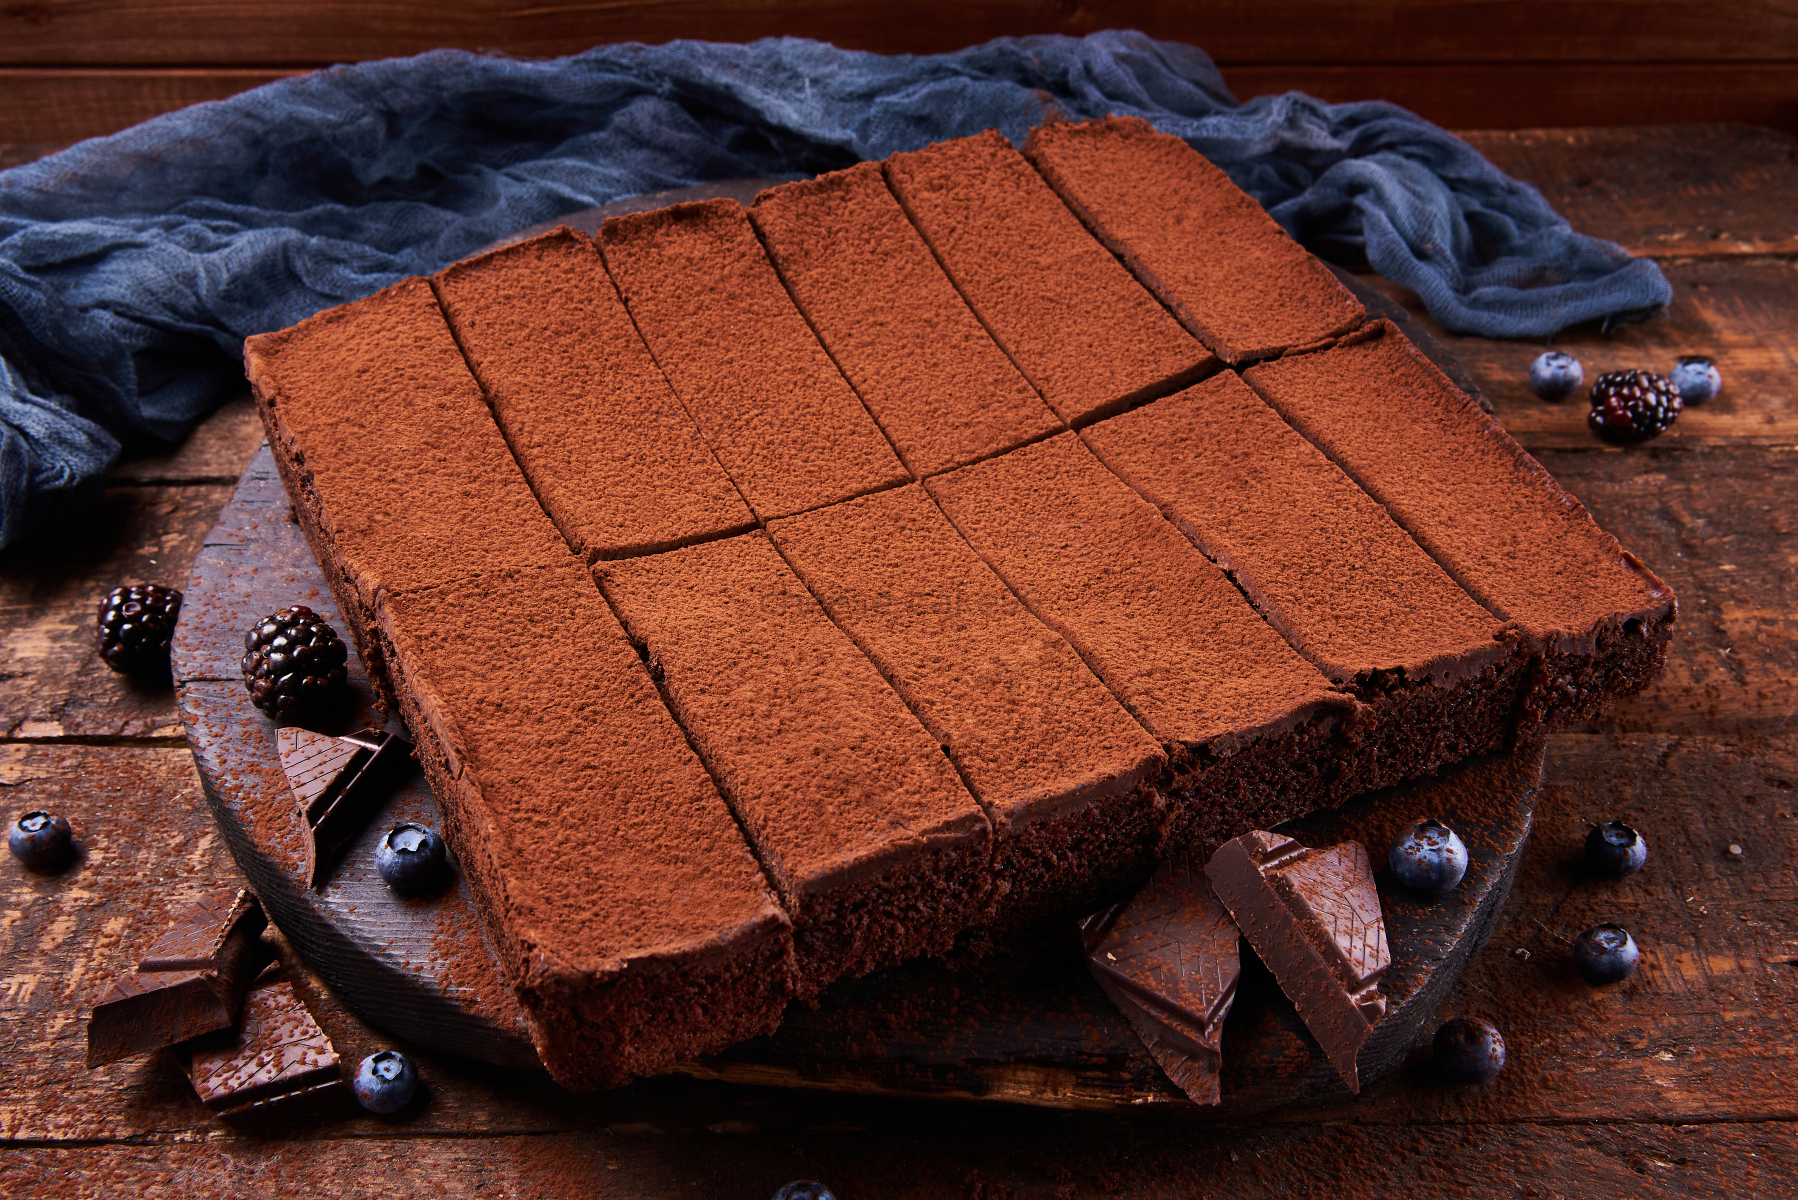 Брауни 1. Торт Брауни. Шоколадный Брауни. Шоколадный Брауни Bettys Cake. Торт Брауни в упаковке.